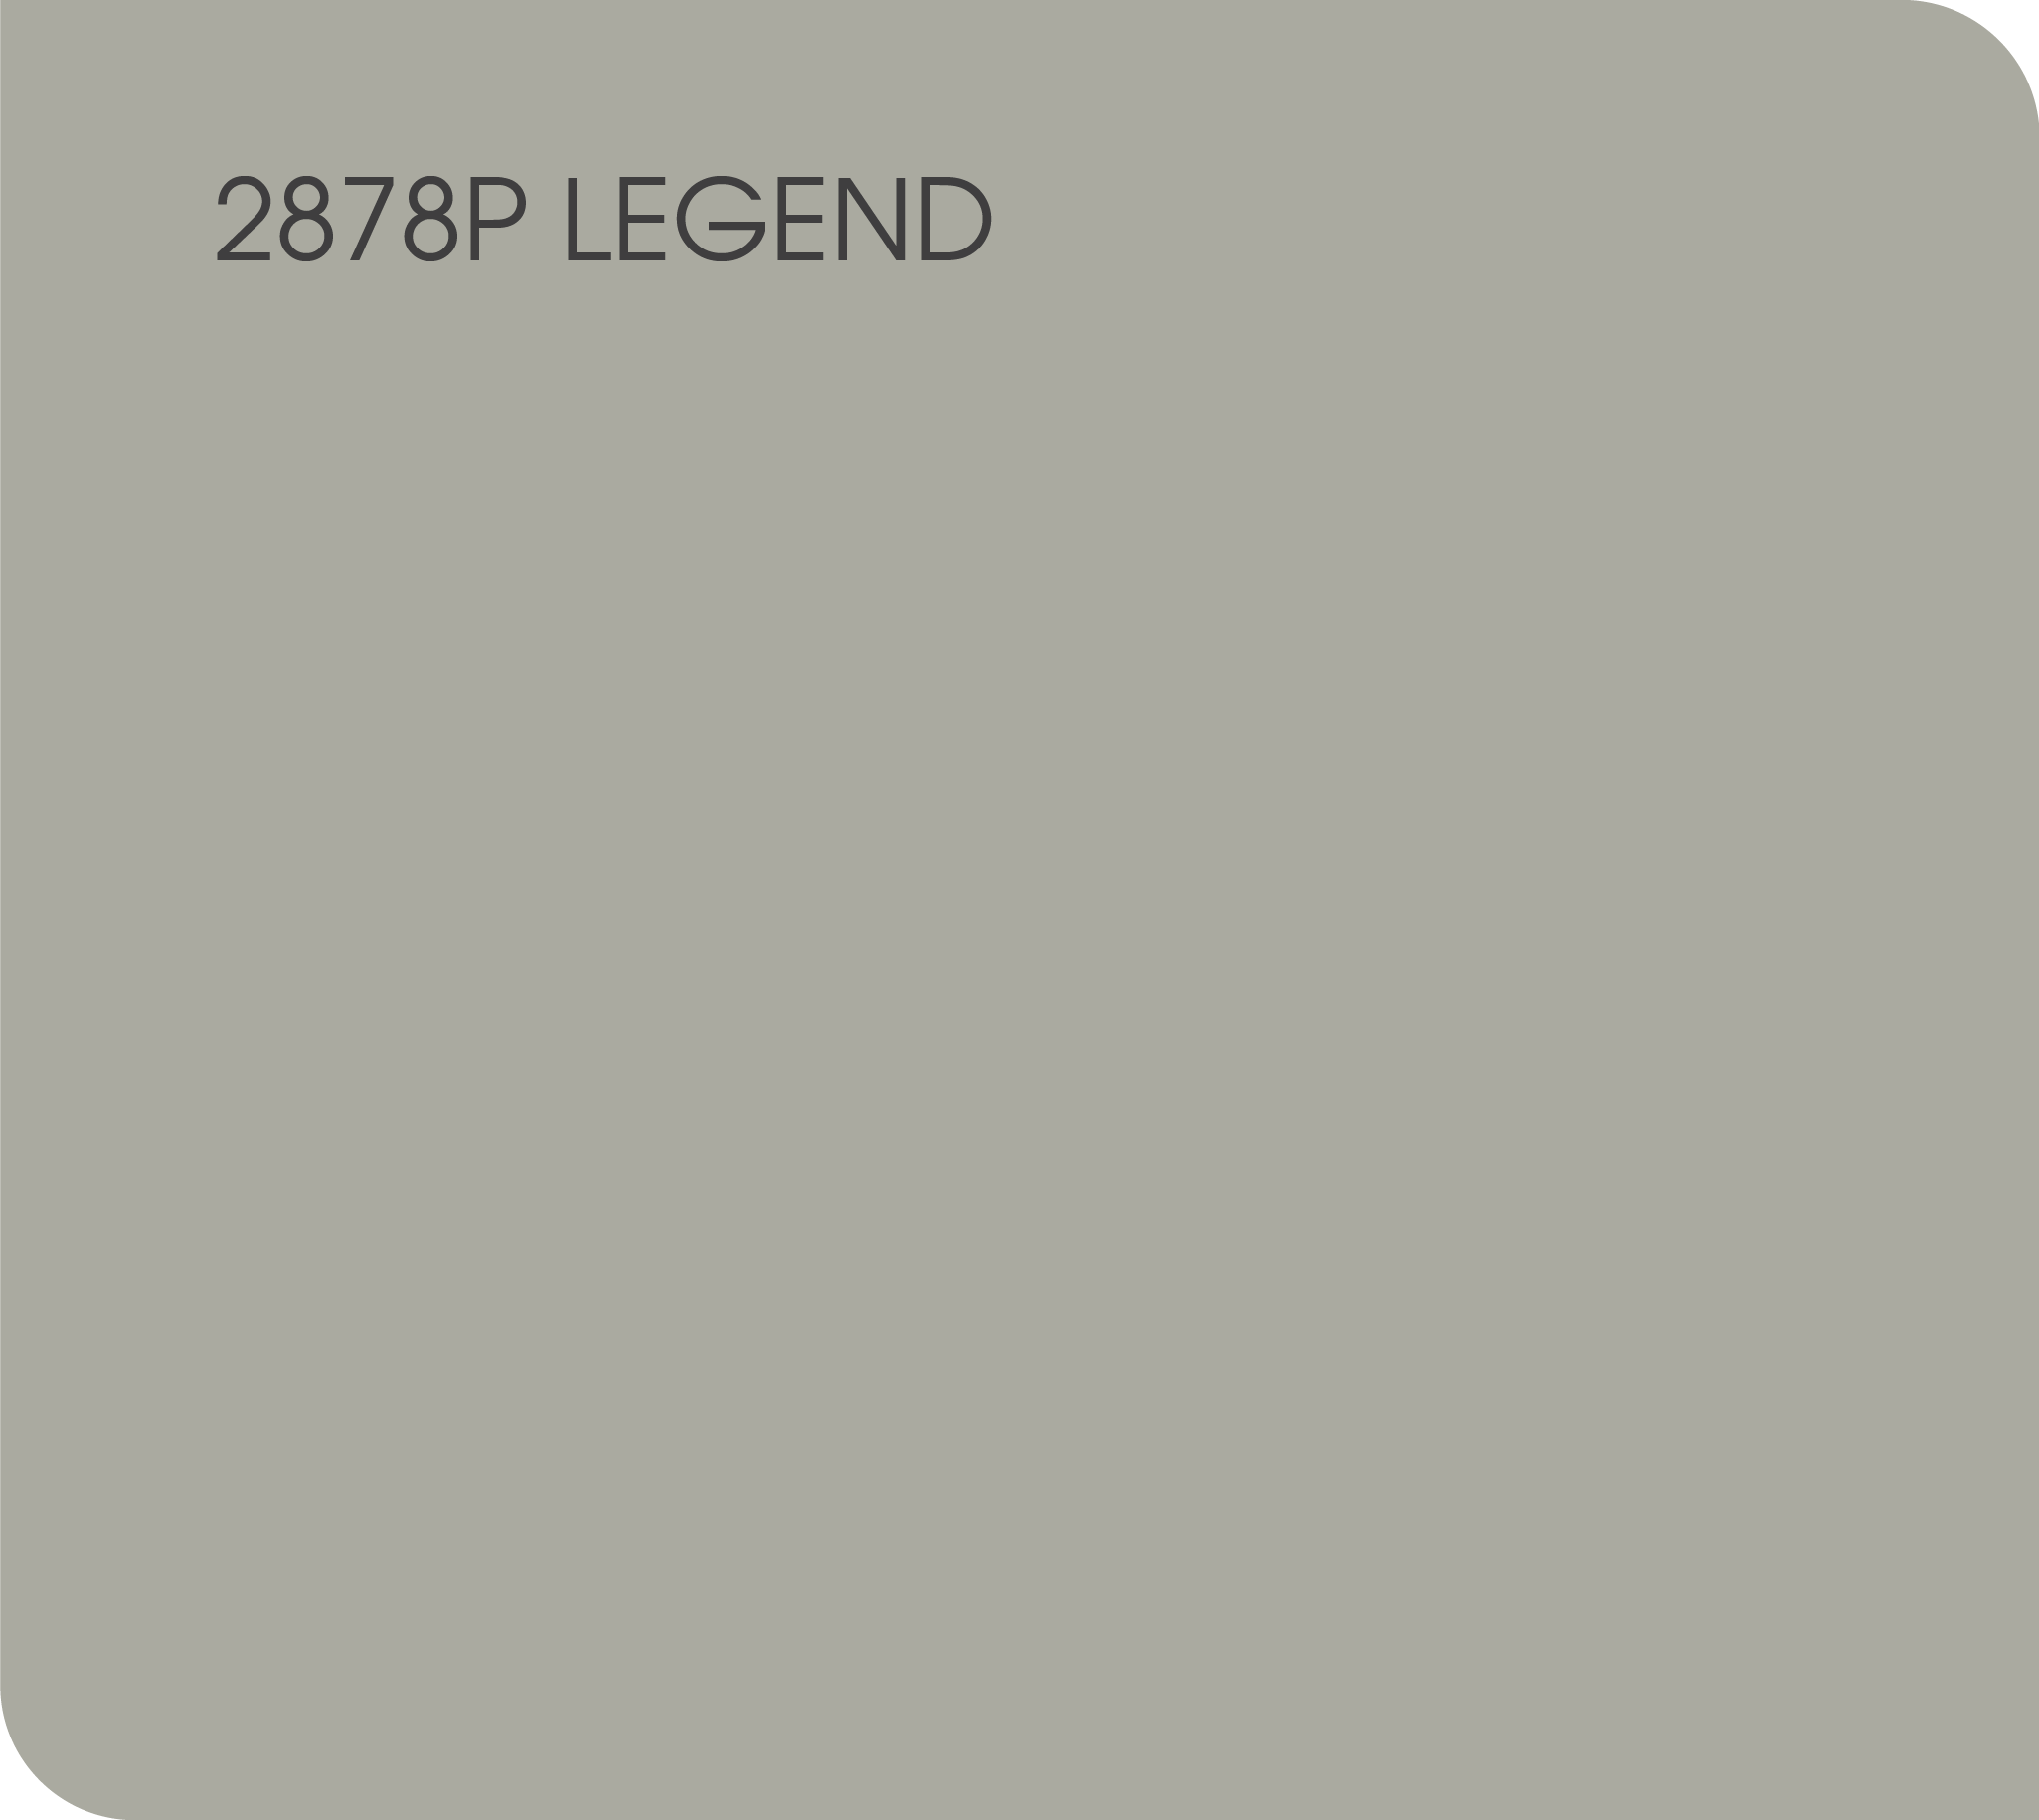 legend 2878P